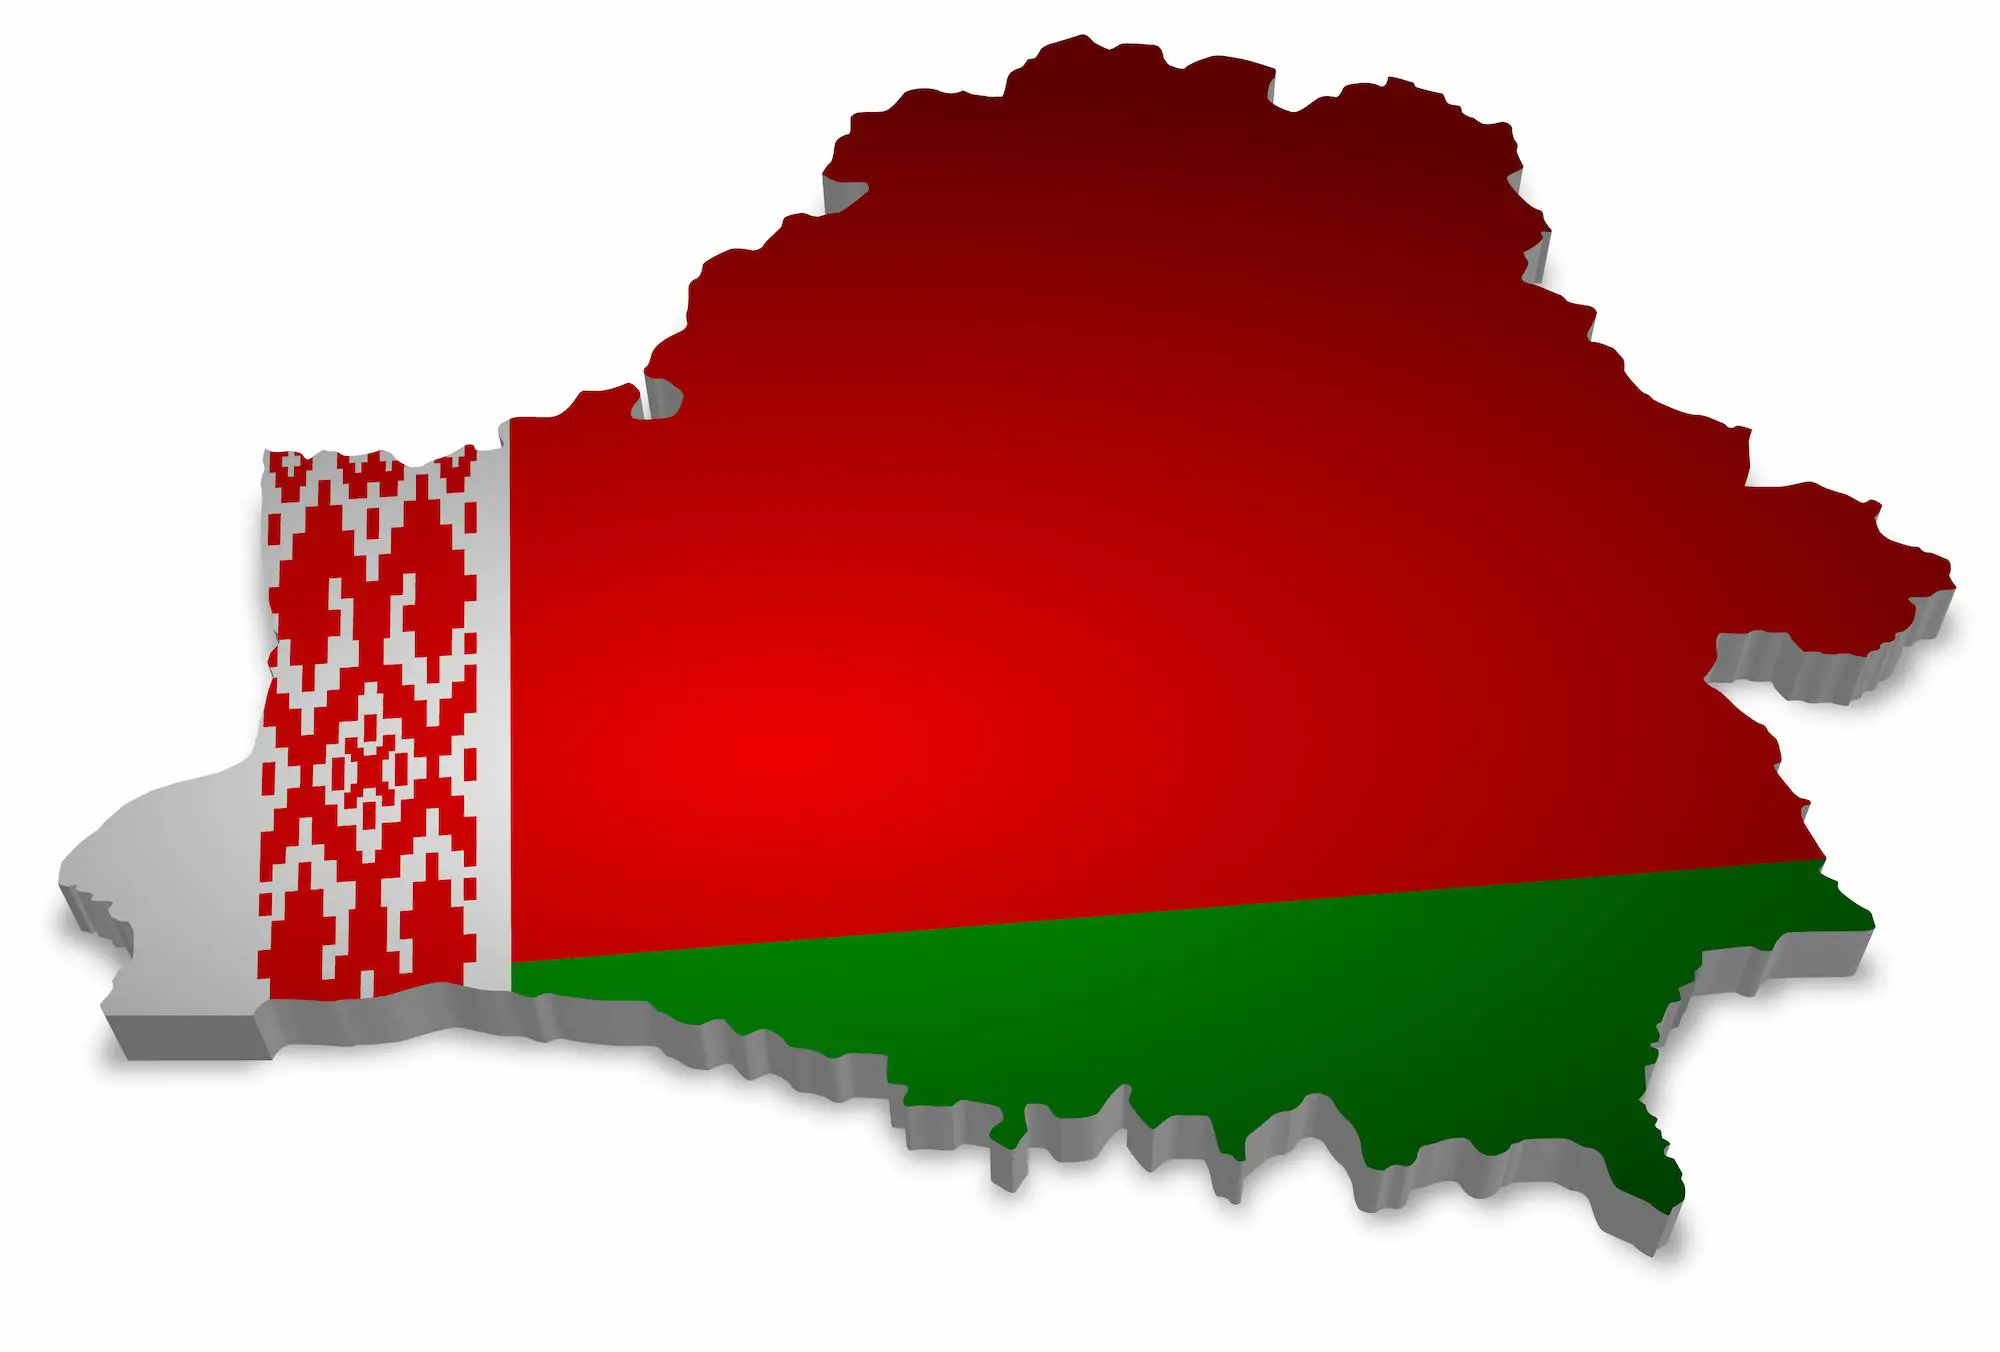 Belarusians